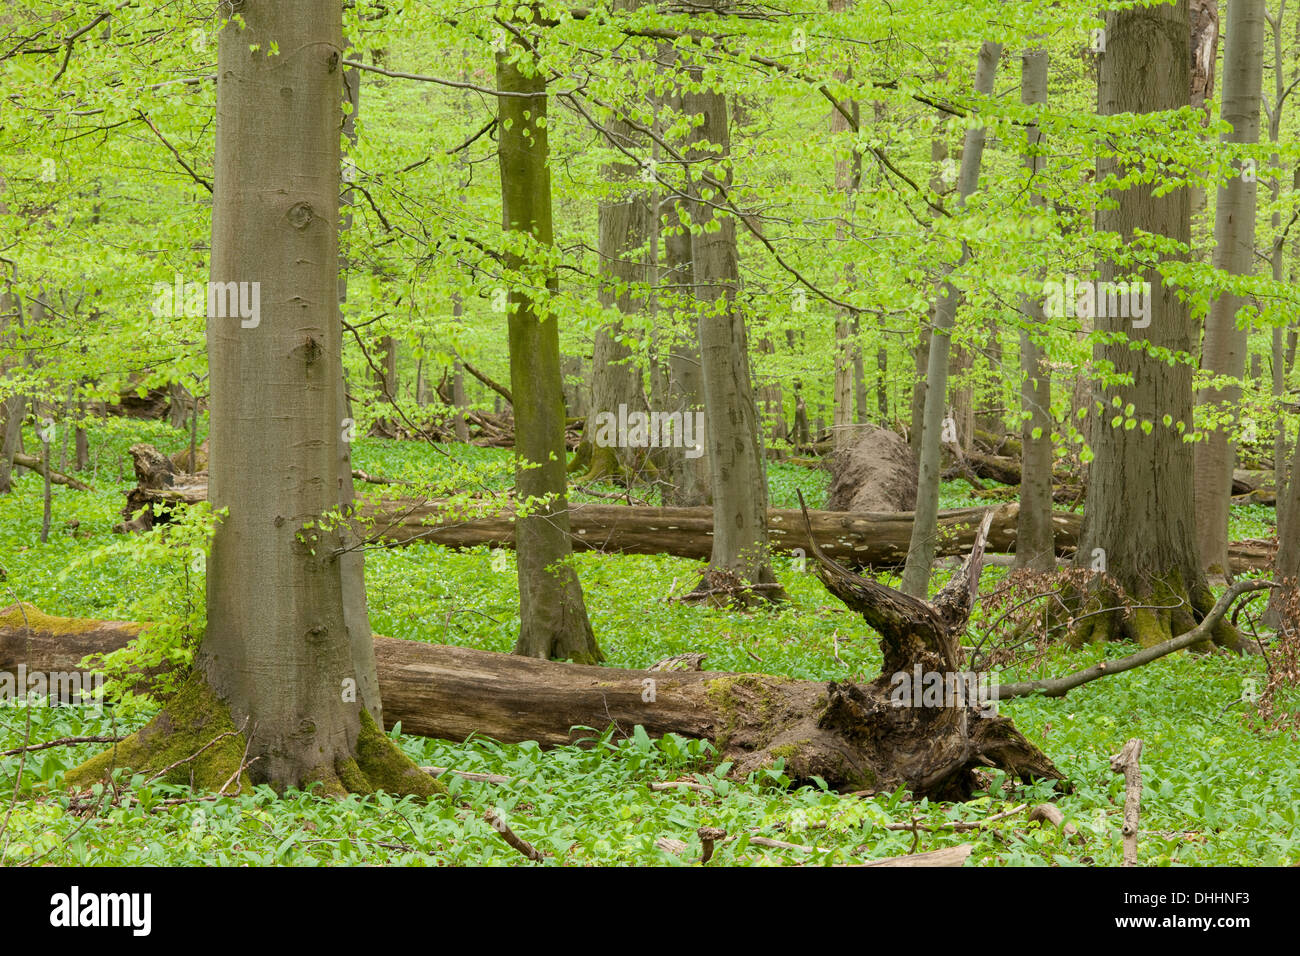 Unione del bosco di faggio in primavera, faggio (Fagus sylvatica) con un sacco di legno morto, Parco Nazionale Hainich, Turingia, Germania Foto Stock